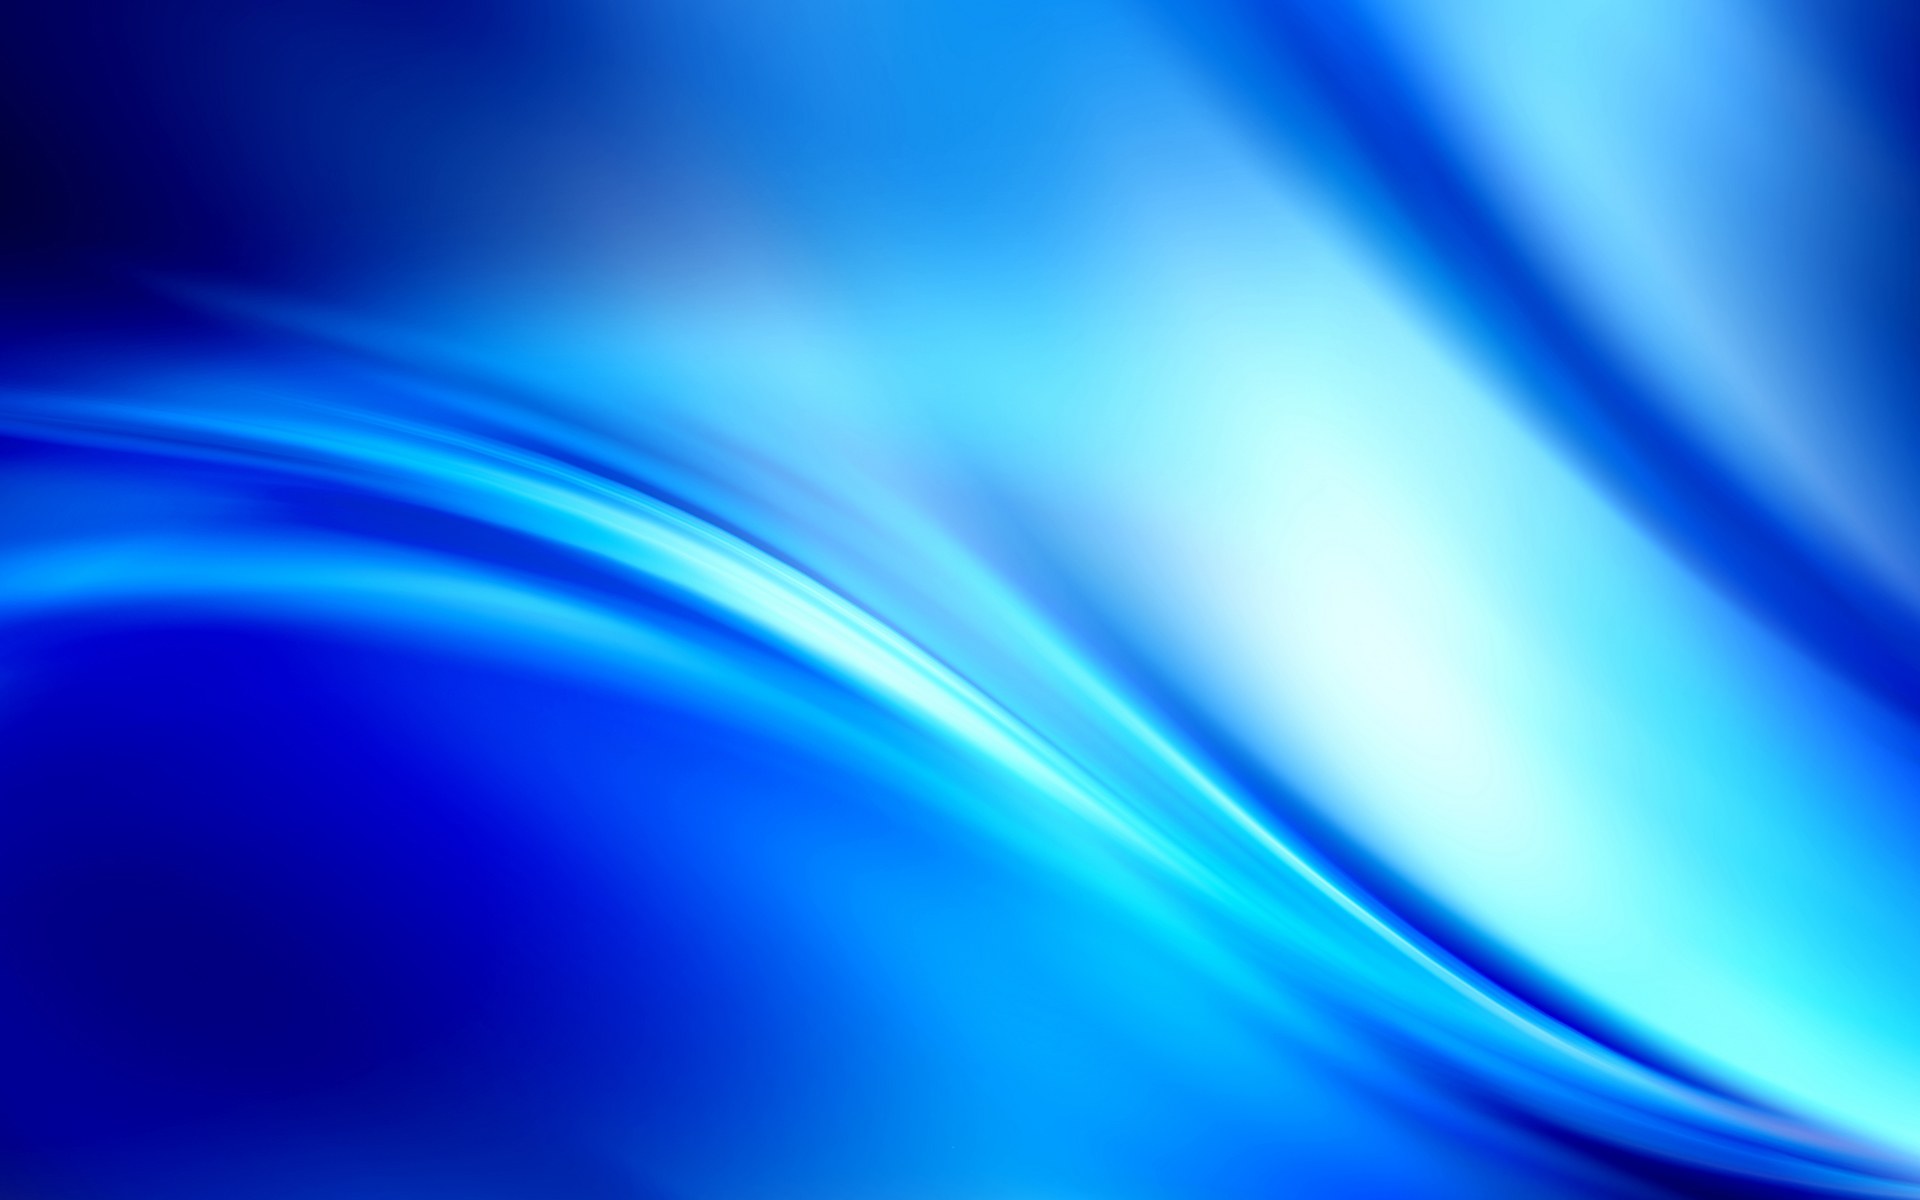 papel tapiz abstracto azul,azul,azul eléctrico,agua,azul cobalto,ligero